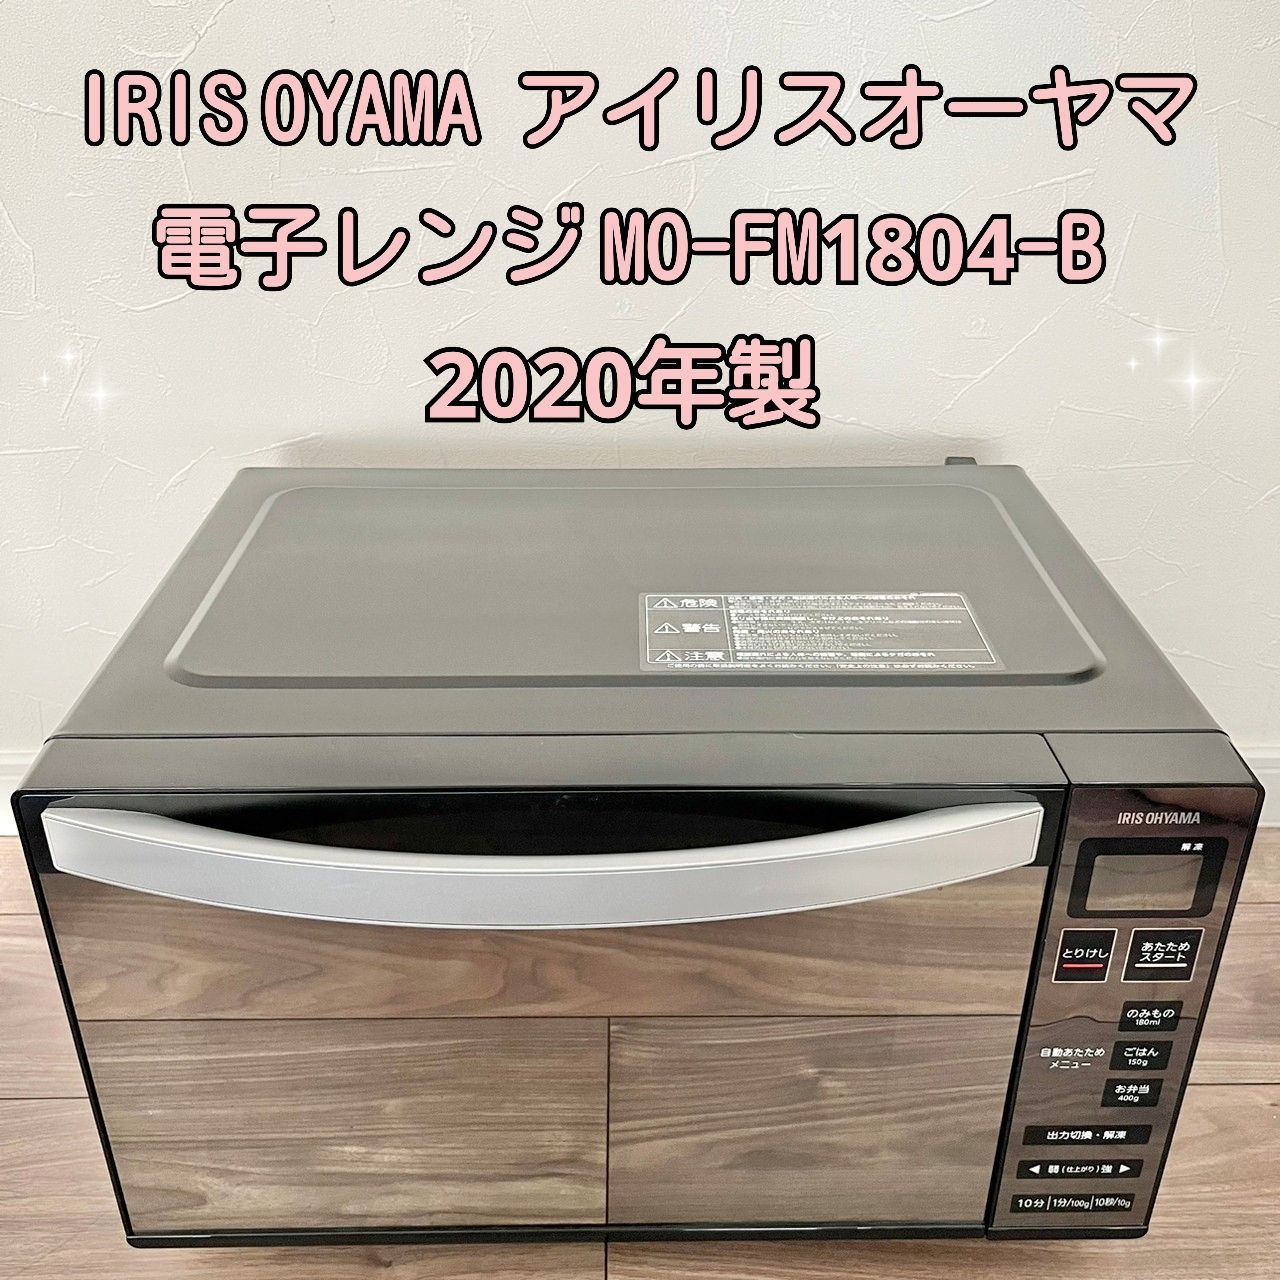 IRIS OYAMA アイリスオーヤマ 電子レンジ MO-FM1804-B 2020年製